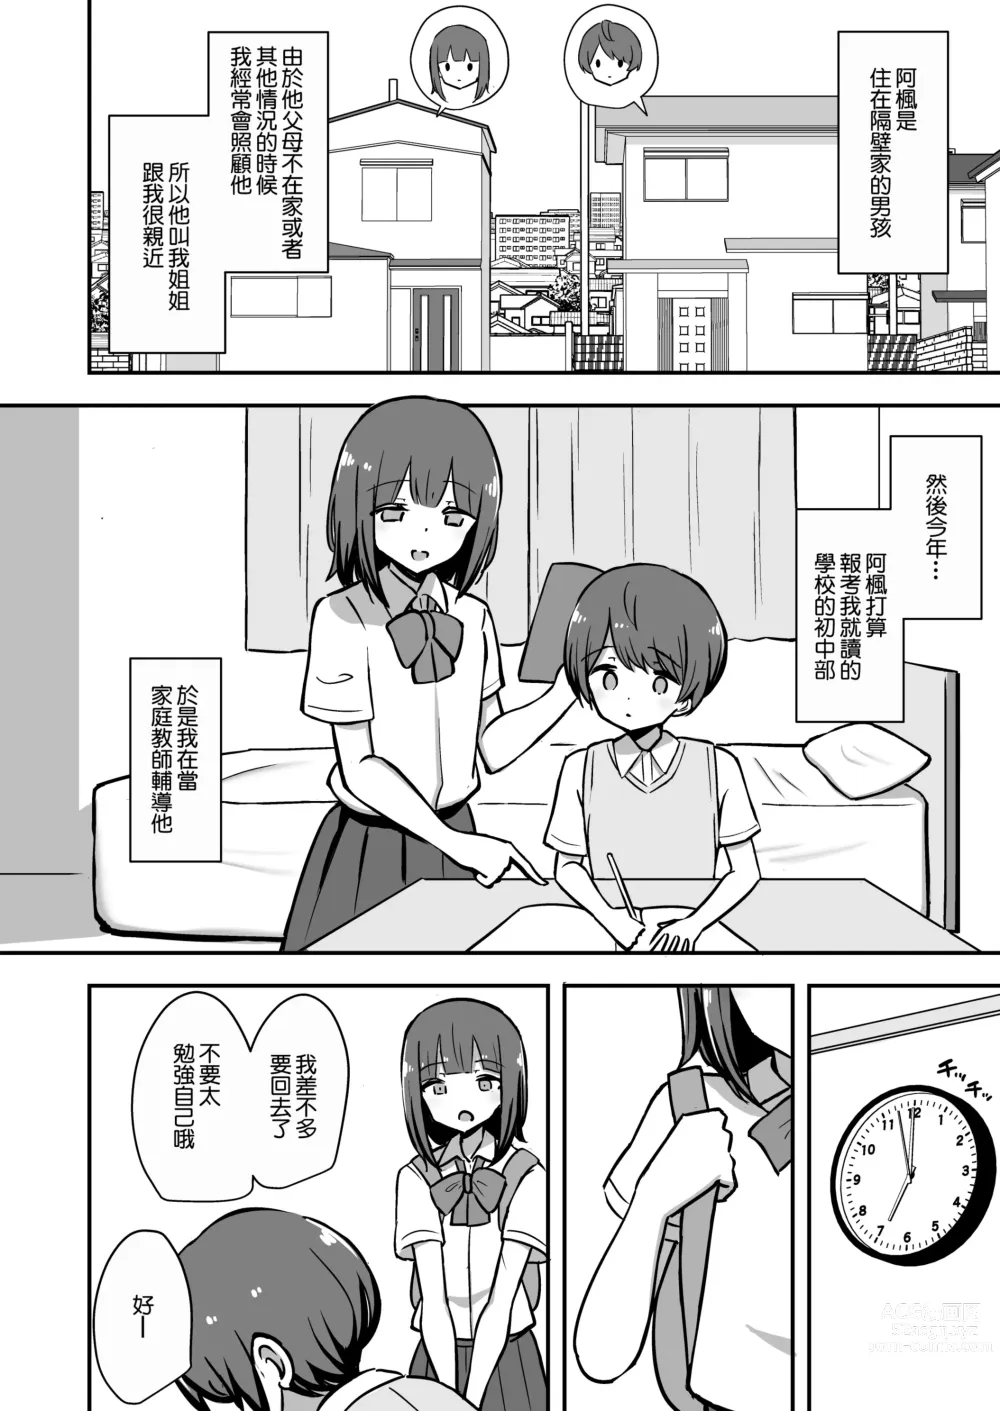 Page 3 of doujinshi 我與姐姐的舒服的學習 預覽版